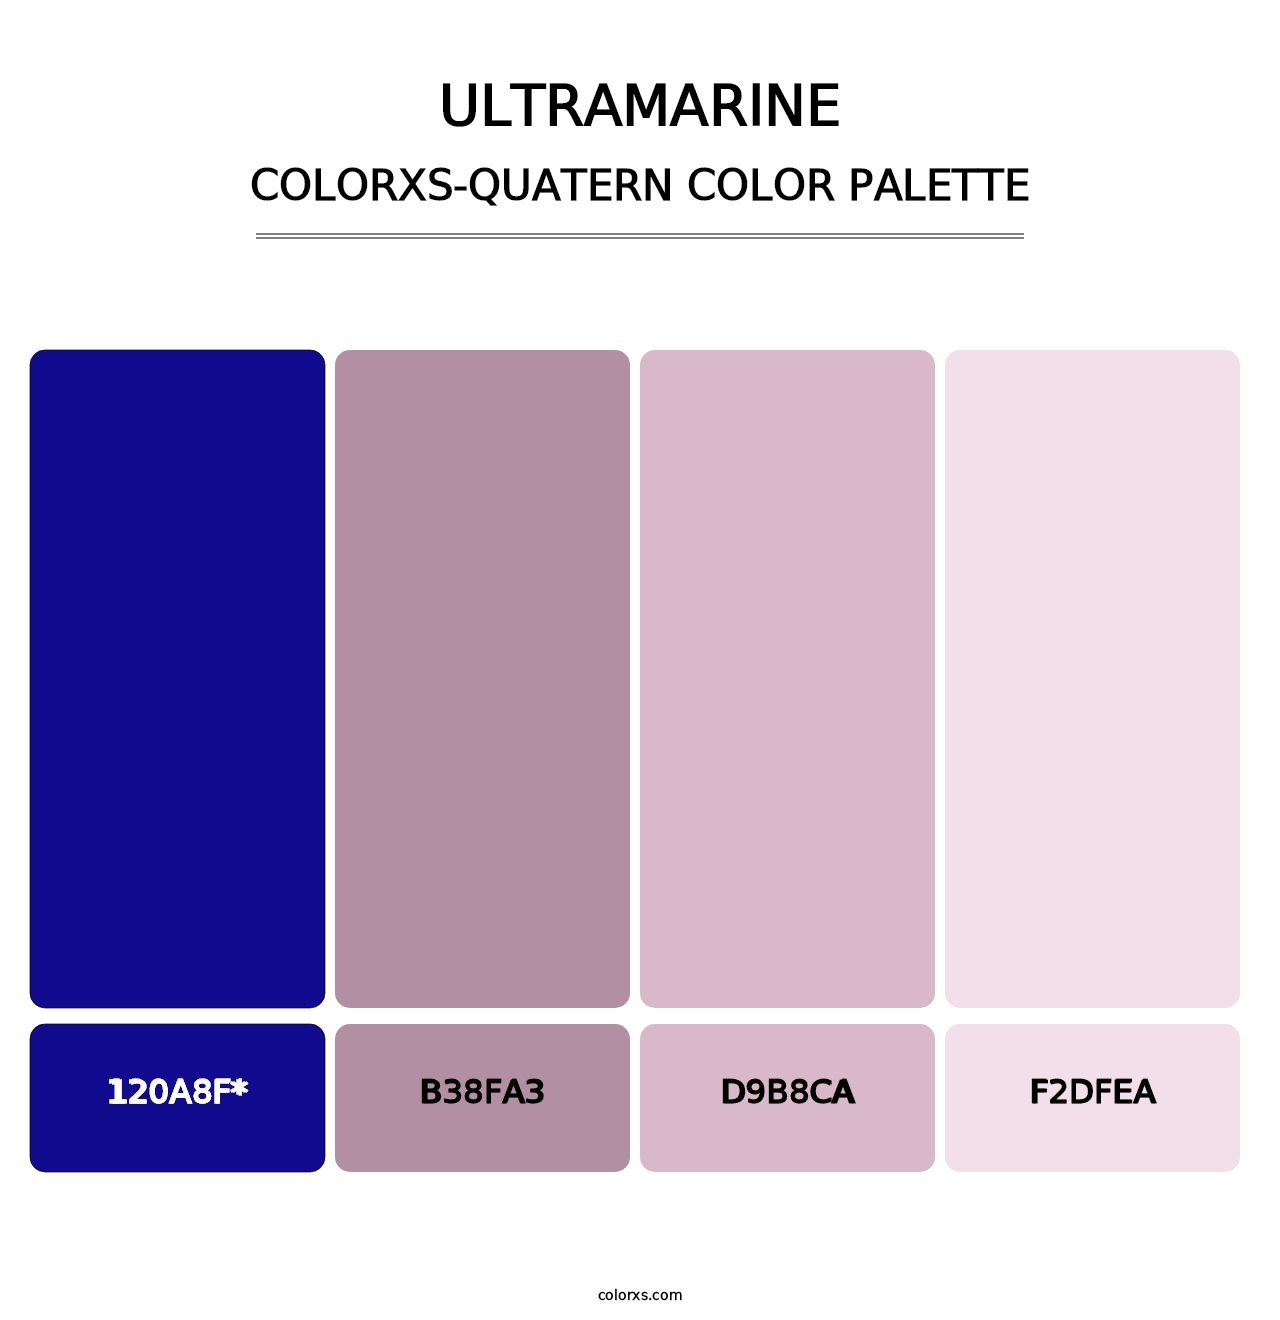 Ultramarine - Colorxs Quatern Palette